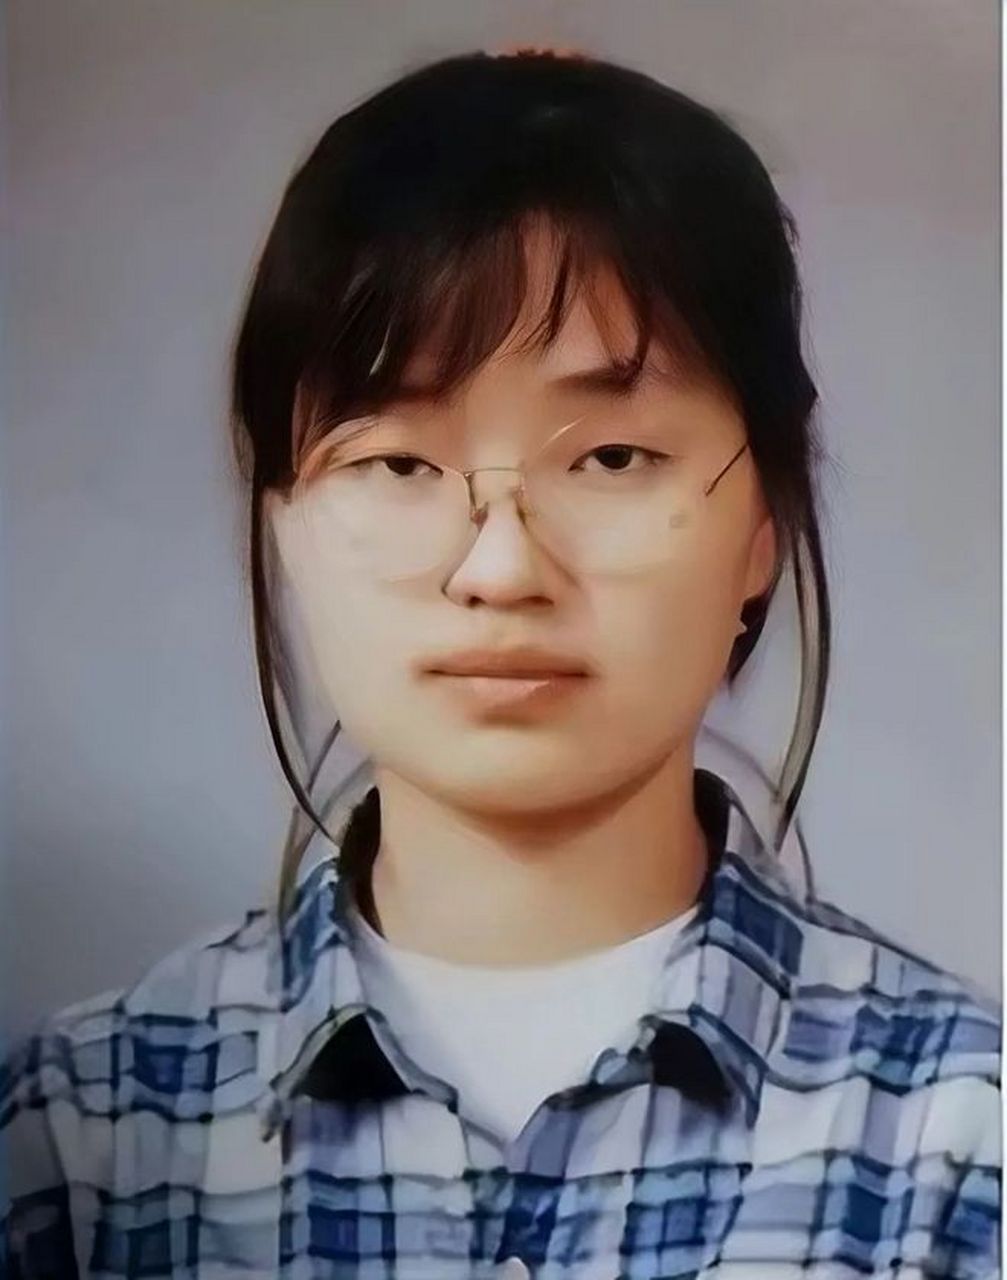 这是韩国总统夫人金建希的早期旧照,只见她戴着眼镜,随意扎着头发